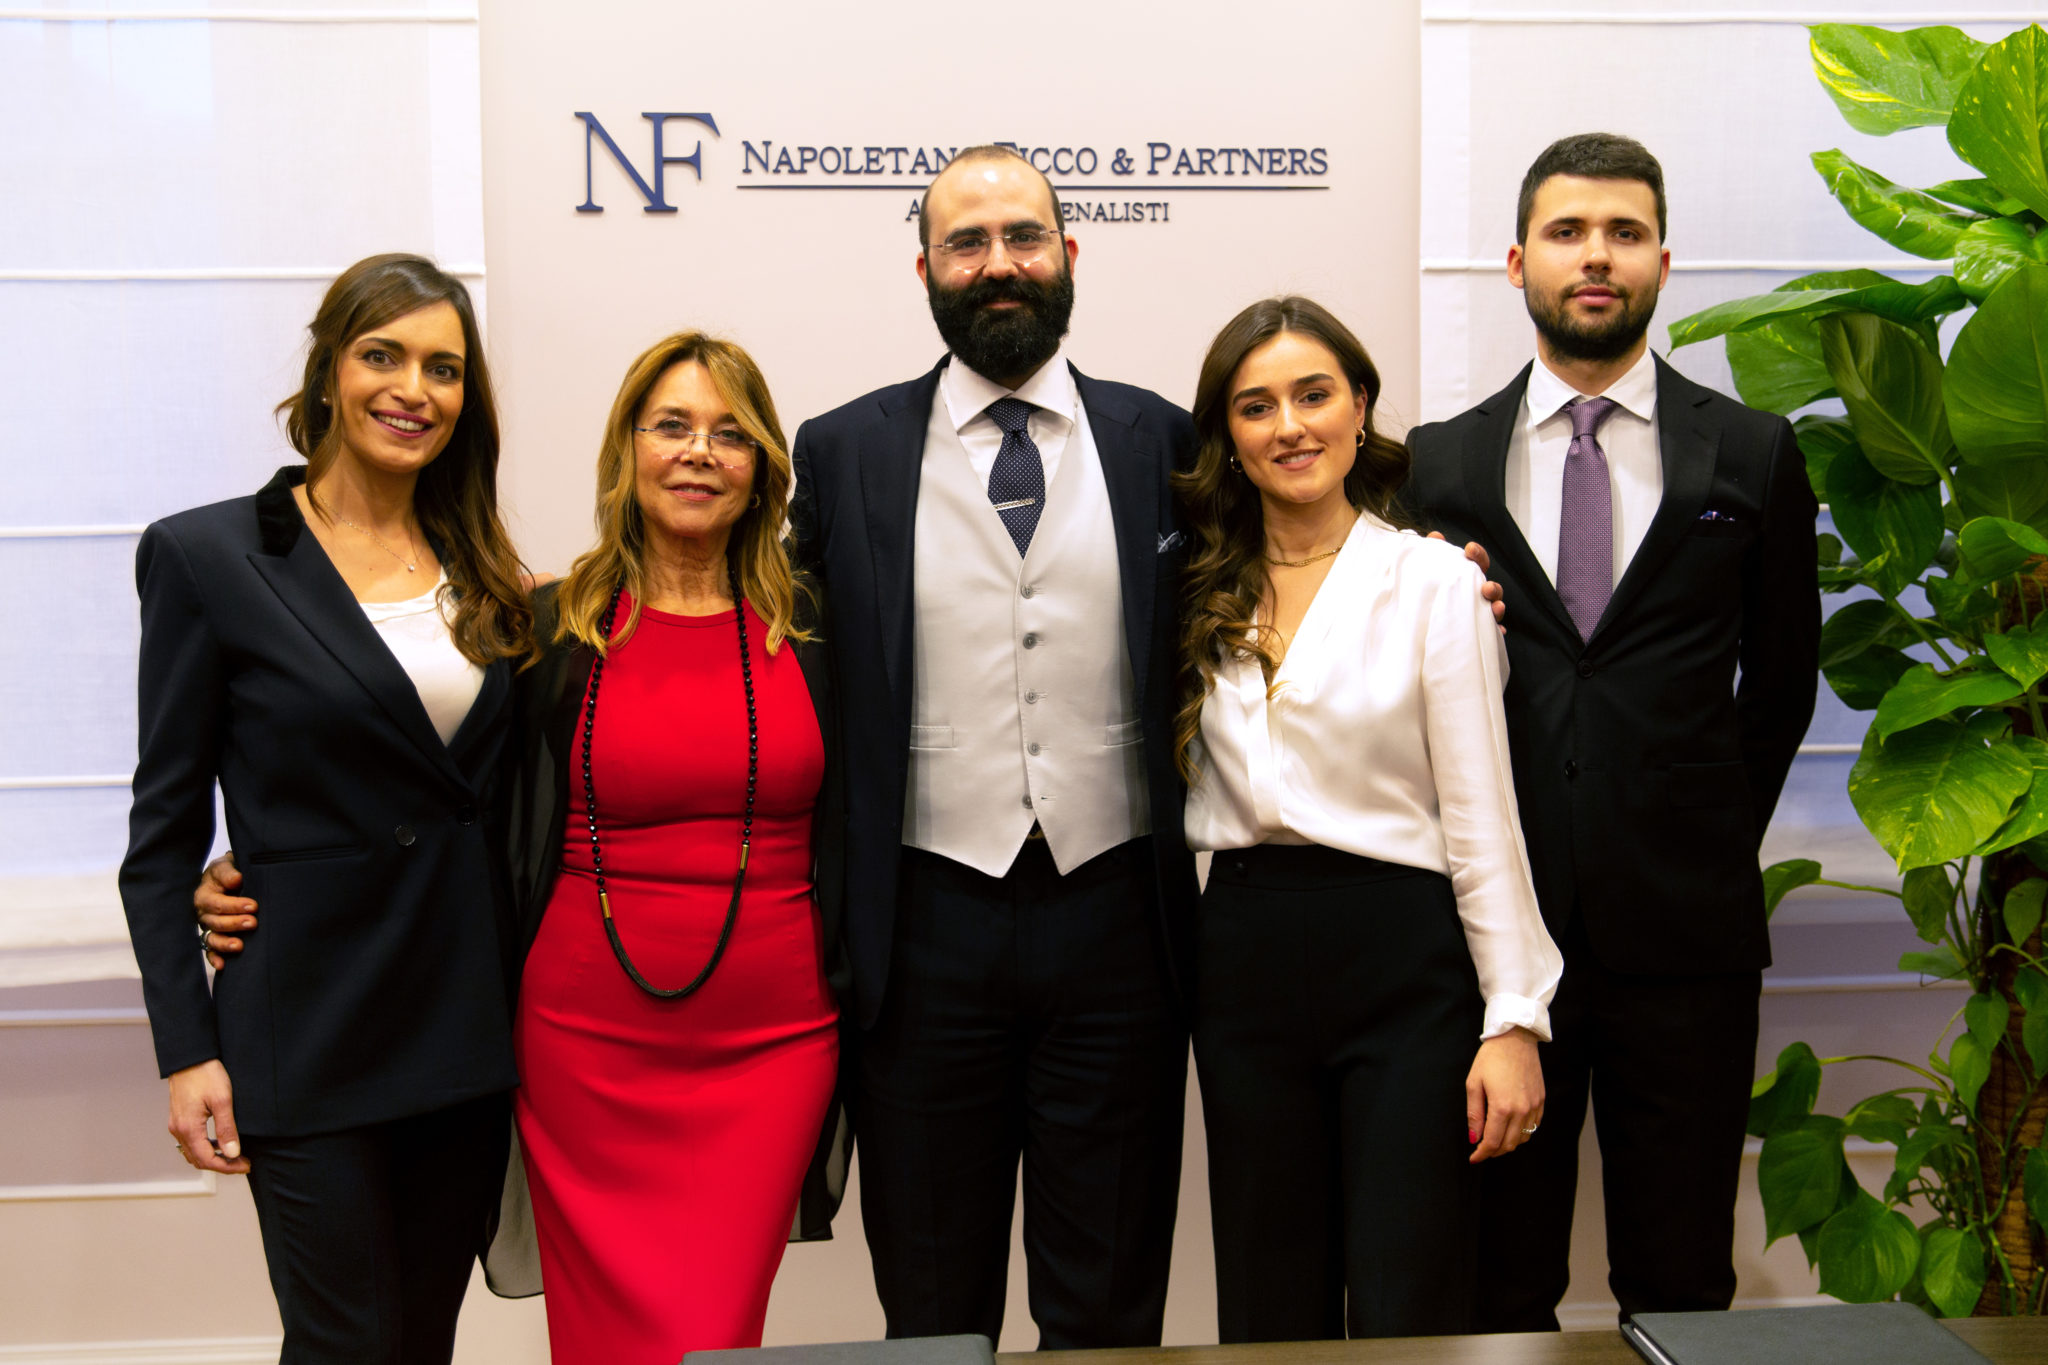 Napoletano Ficco & Partners